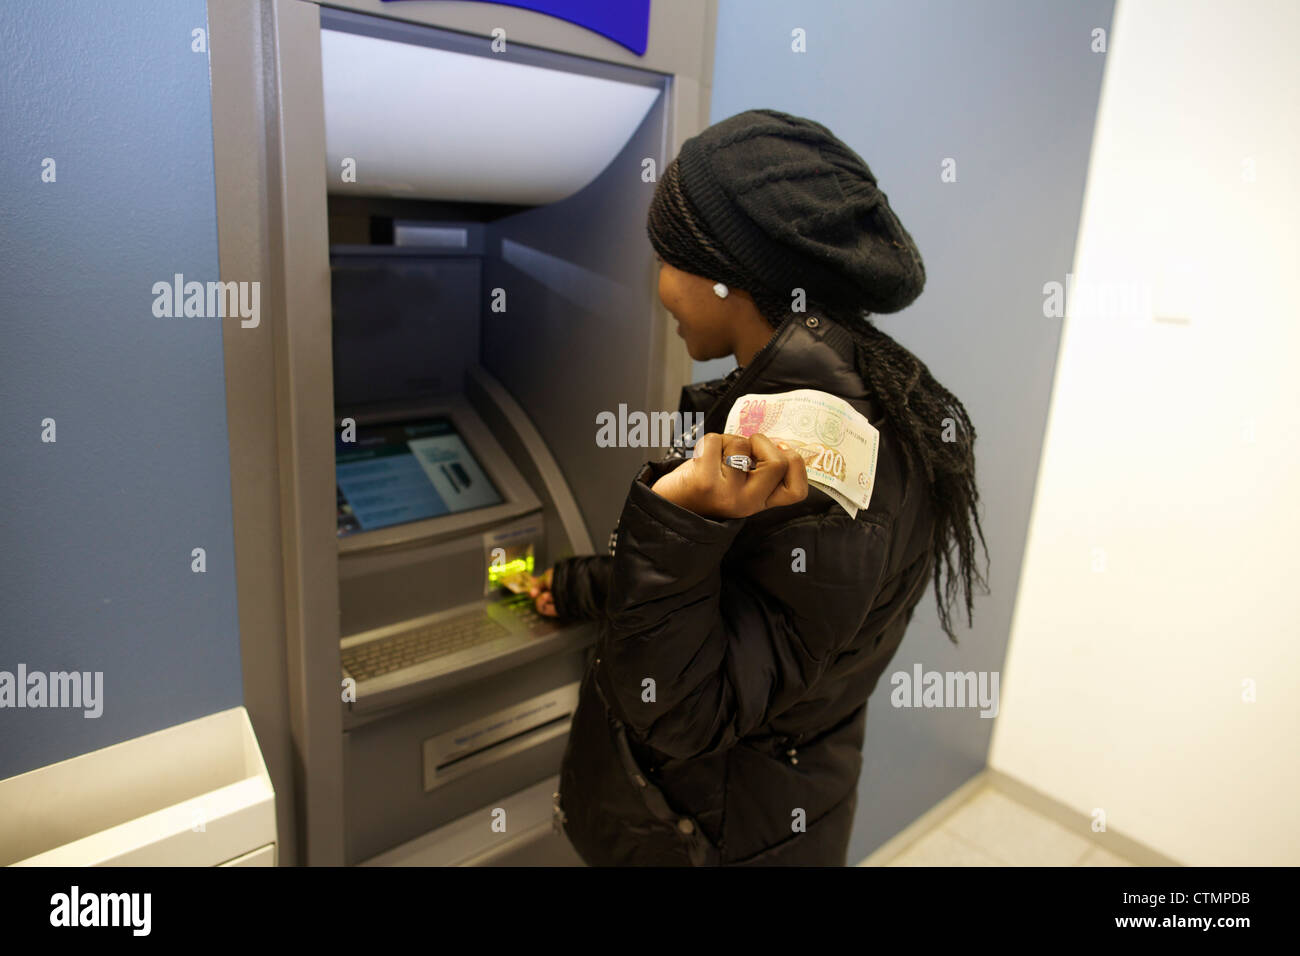 Eine junge Frau, die Zeichnung Geld aus Geldautomaten, Pietermaritzburg, KwaZulu-Natal, Südafrika Stockfoto